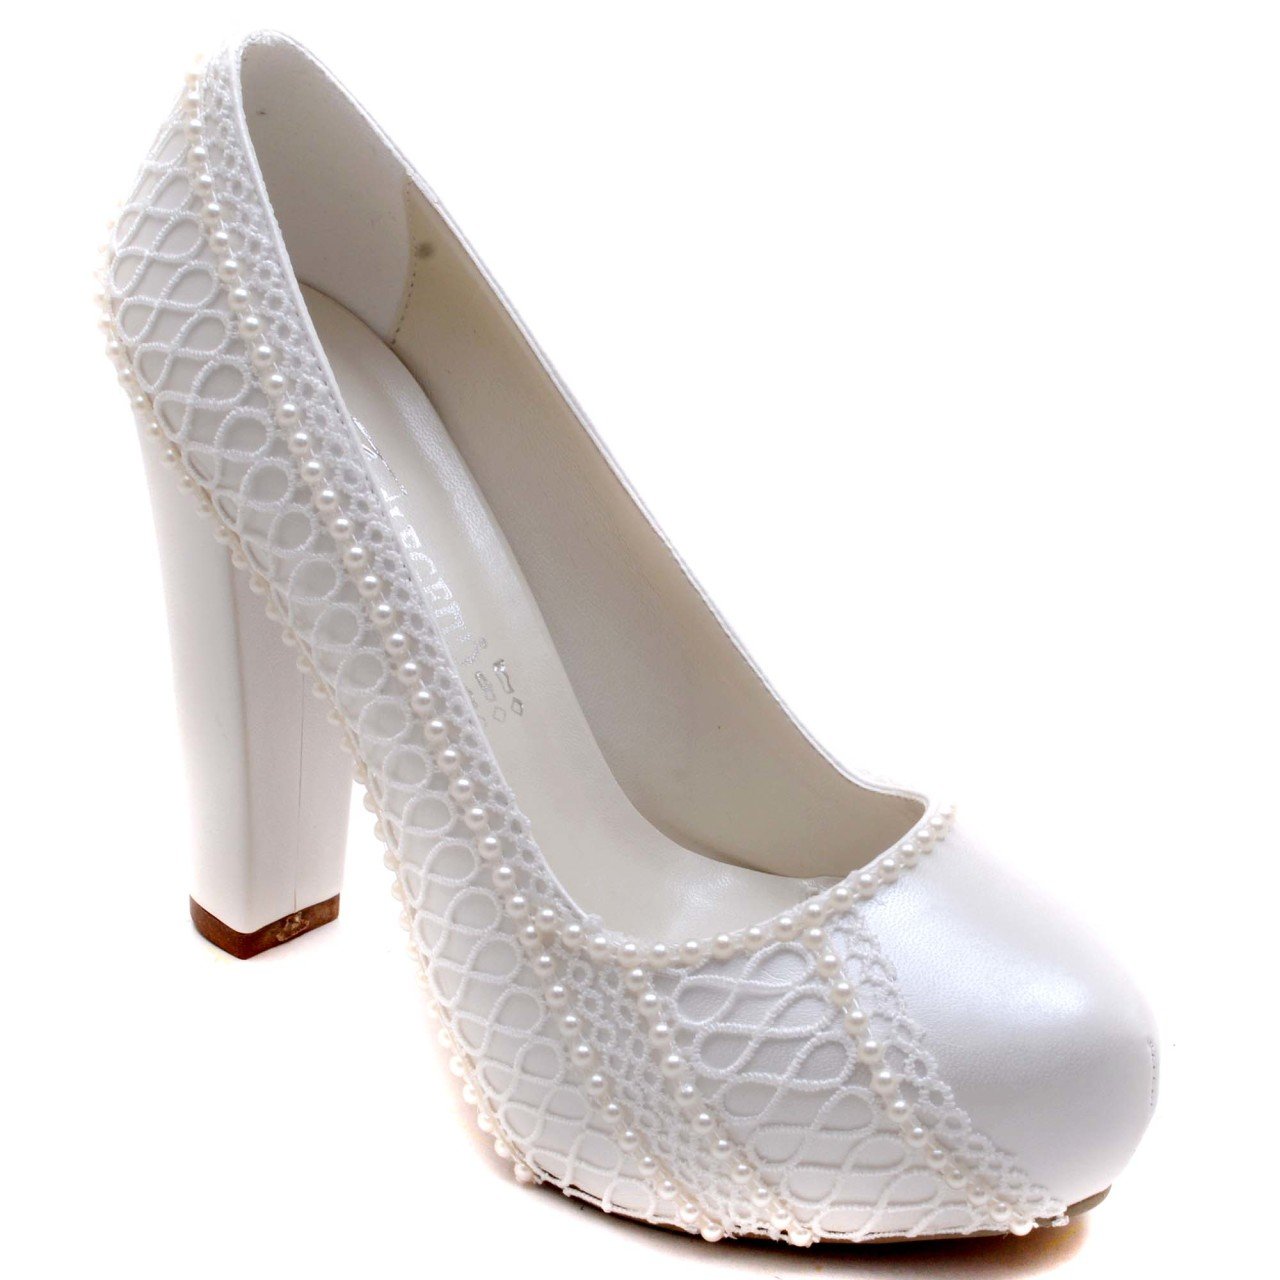 919-G Klasik Gelin Ayakkabısı - Beyaz